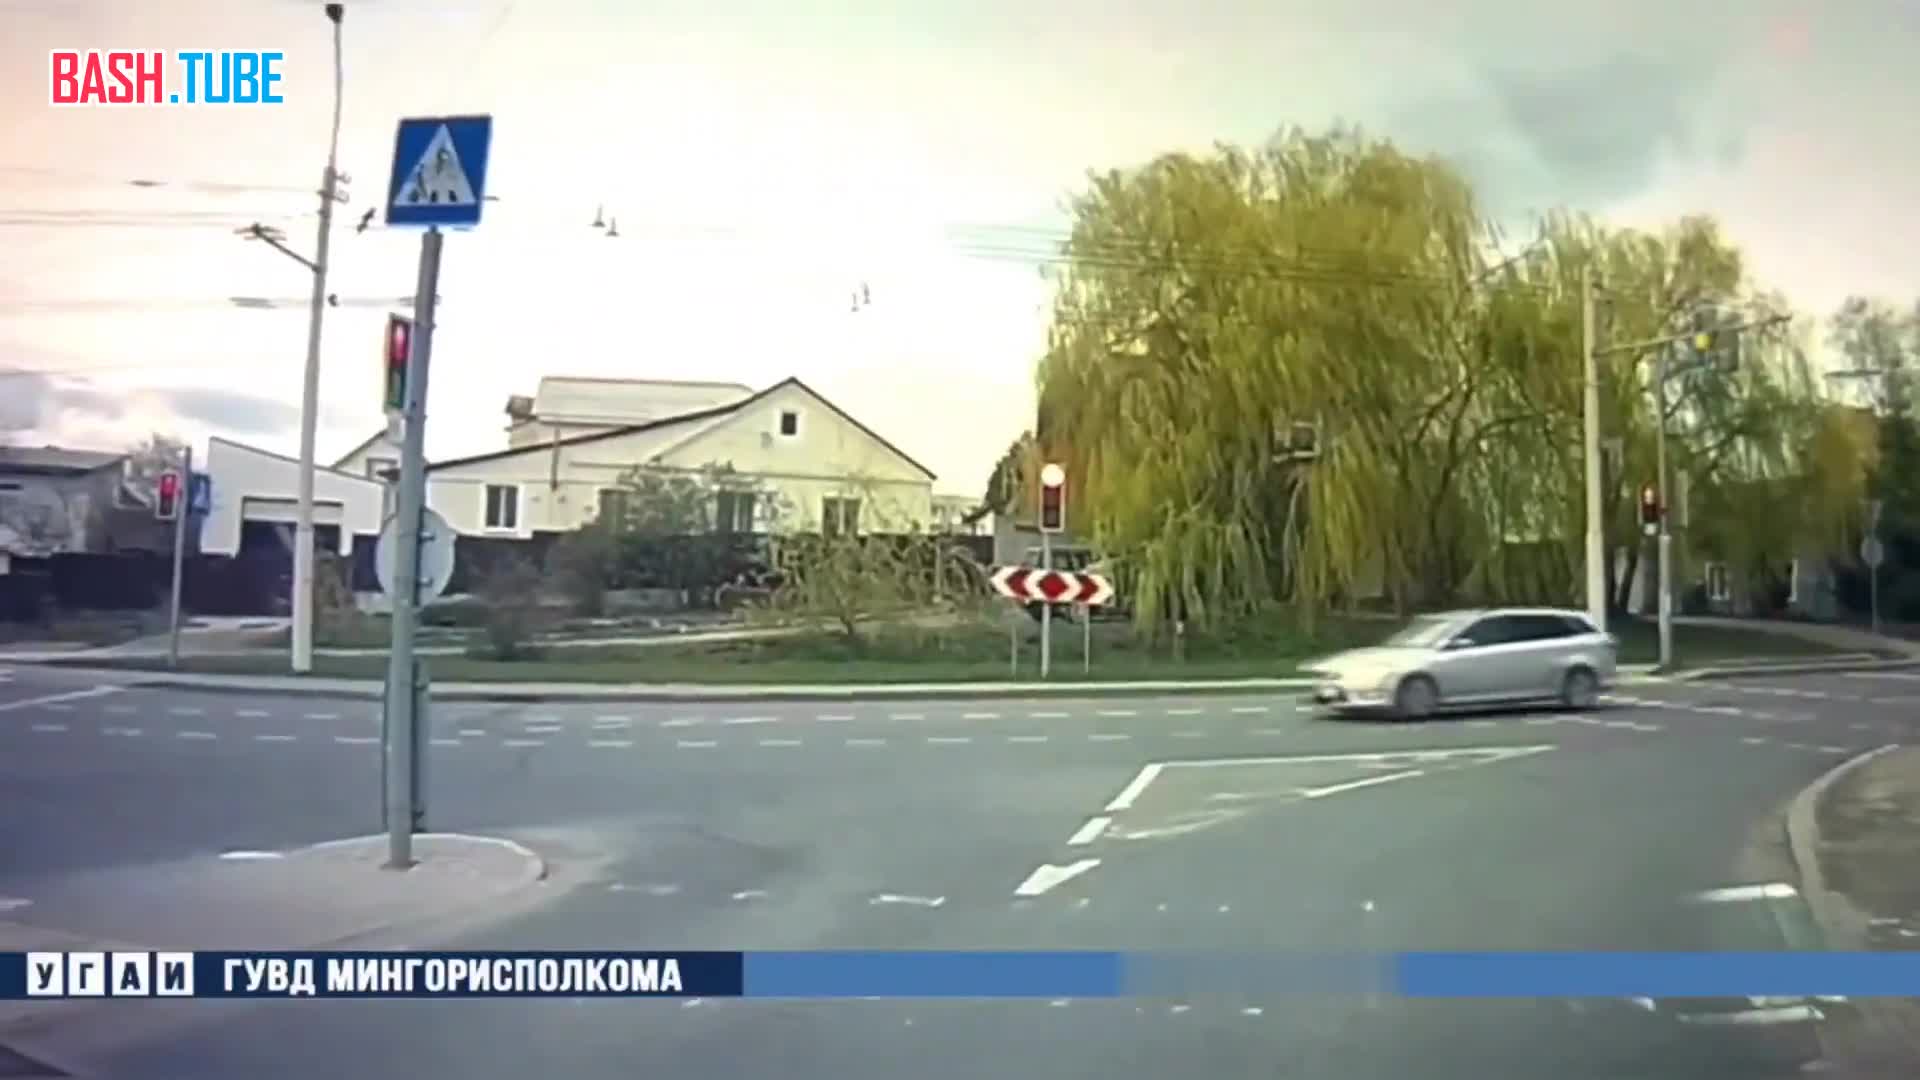  В Минске (Беларусь) мотоциклисты уже летают на дорогах: байкер жестко столкнулся с Ford